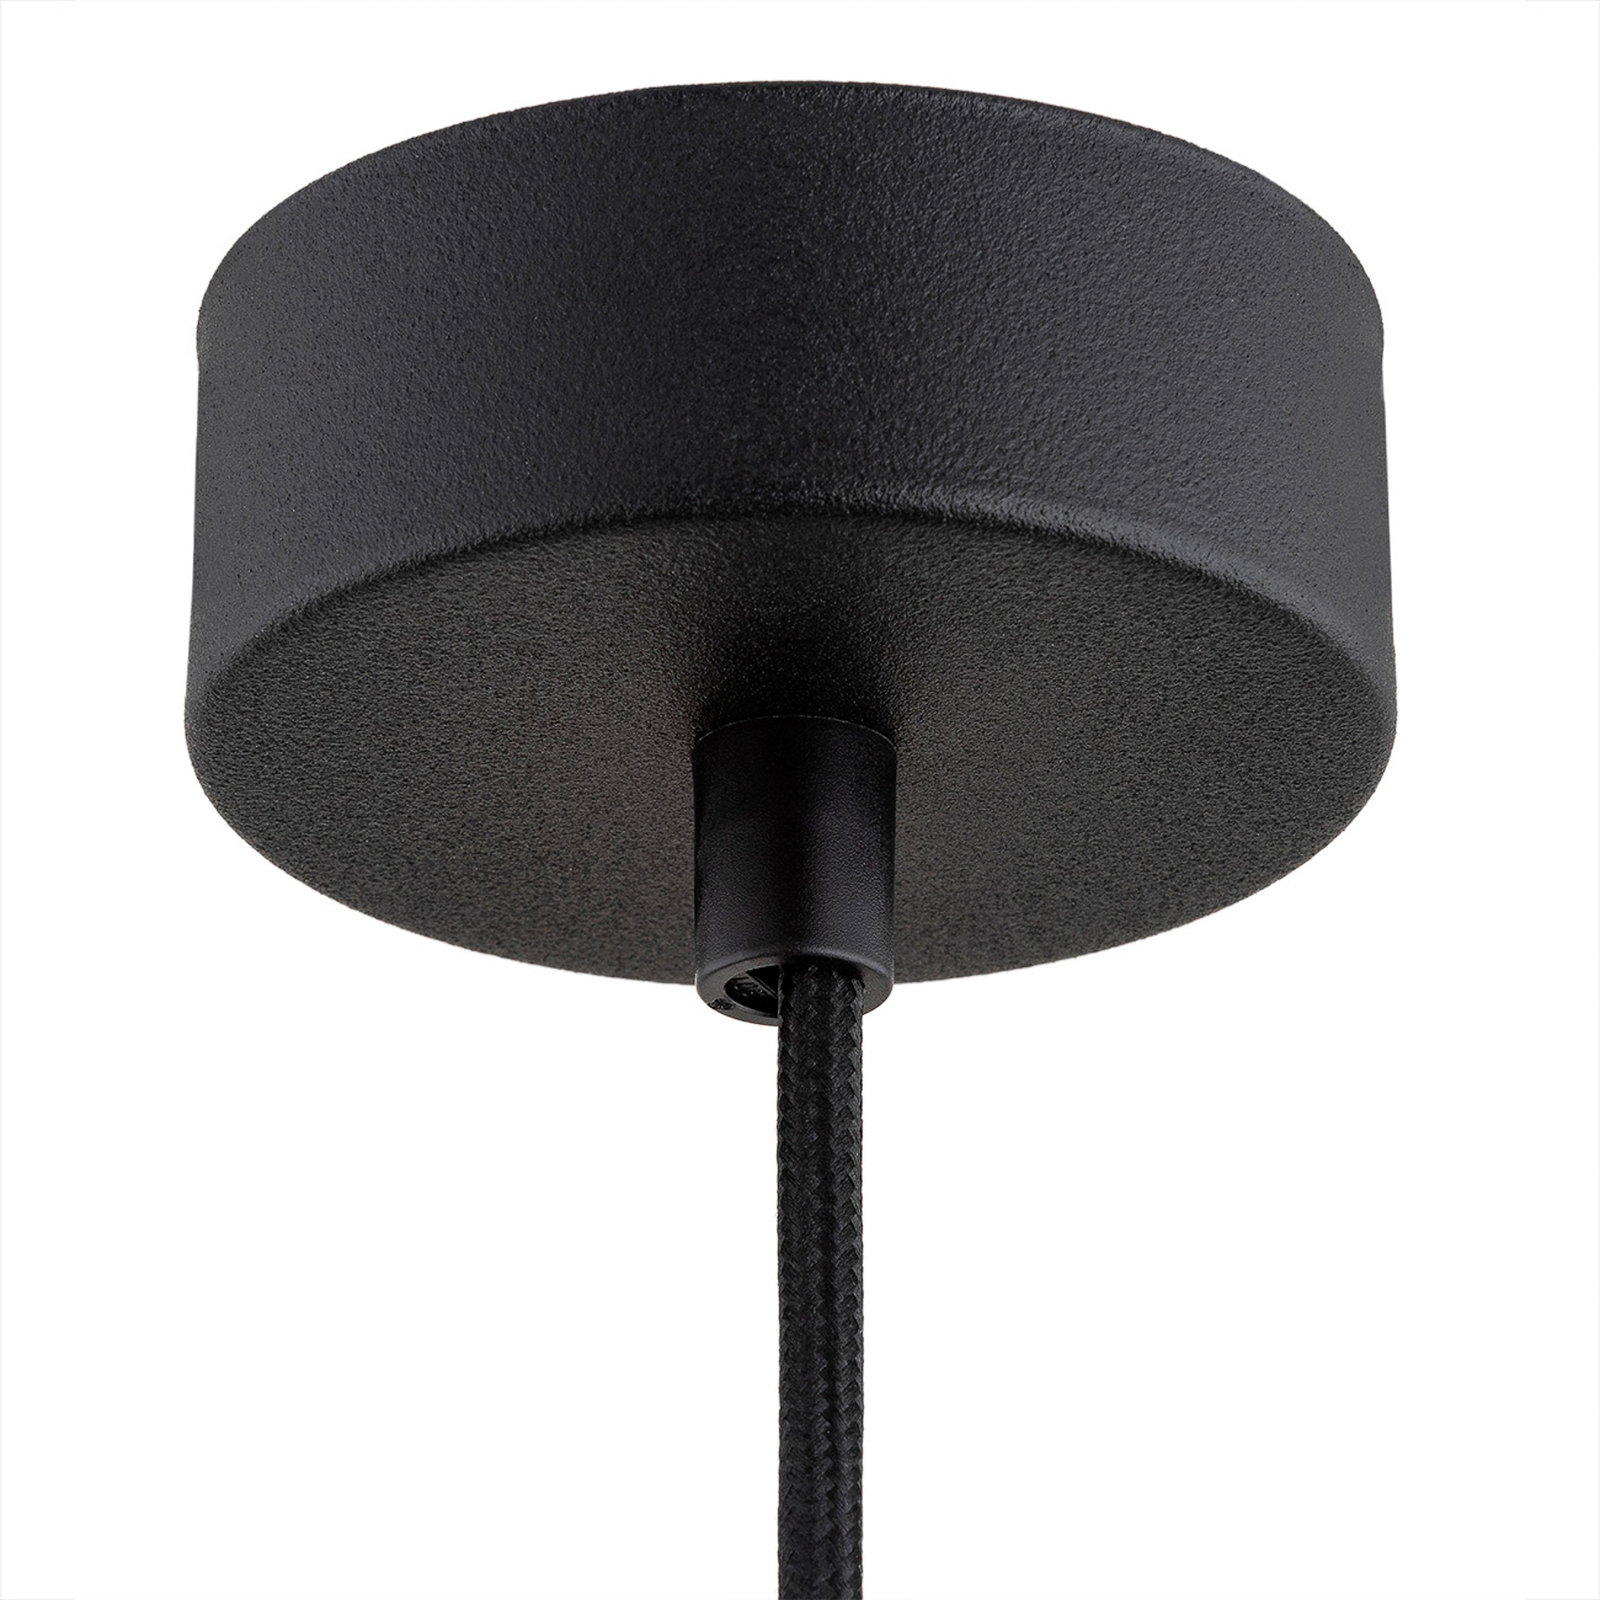 Orte viseća svjetiljka, Ø 28 cm, jedna žarulja, crna